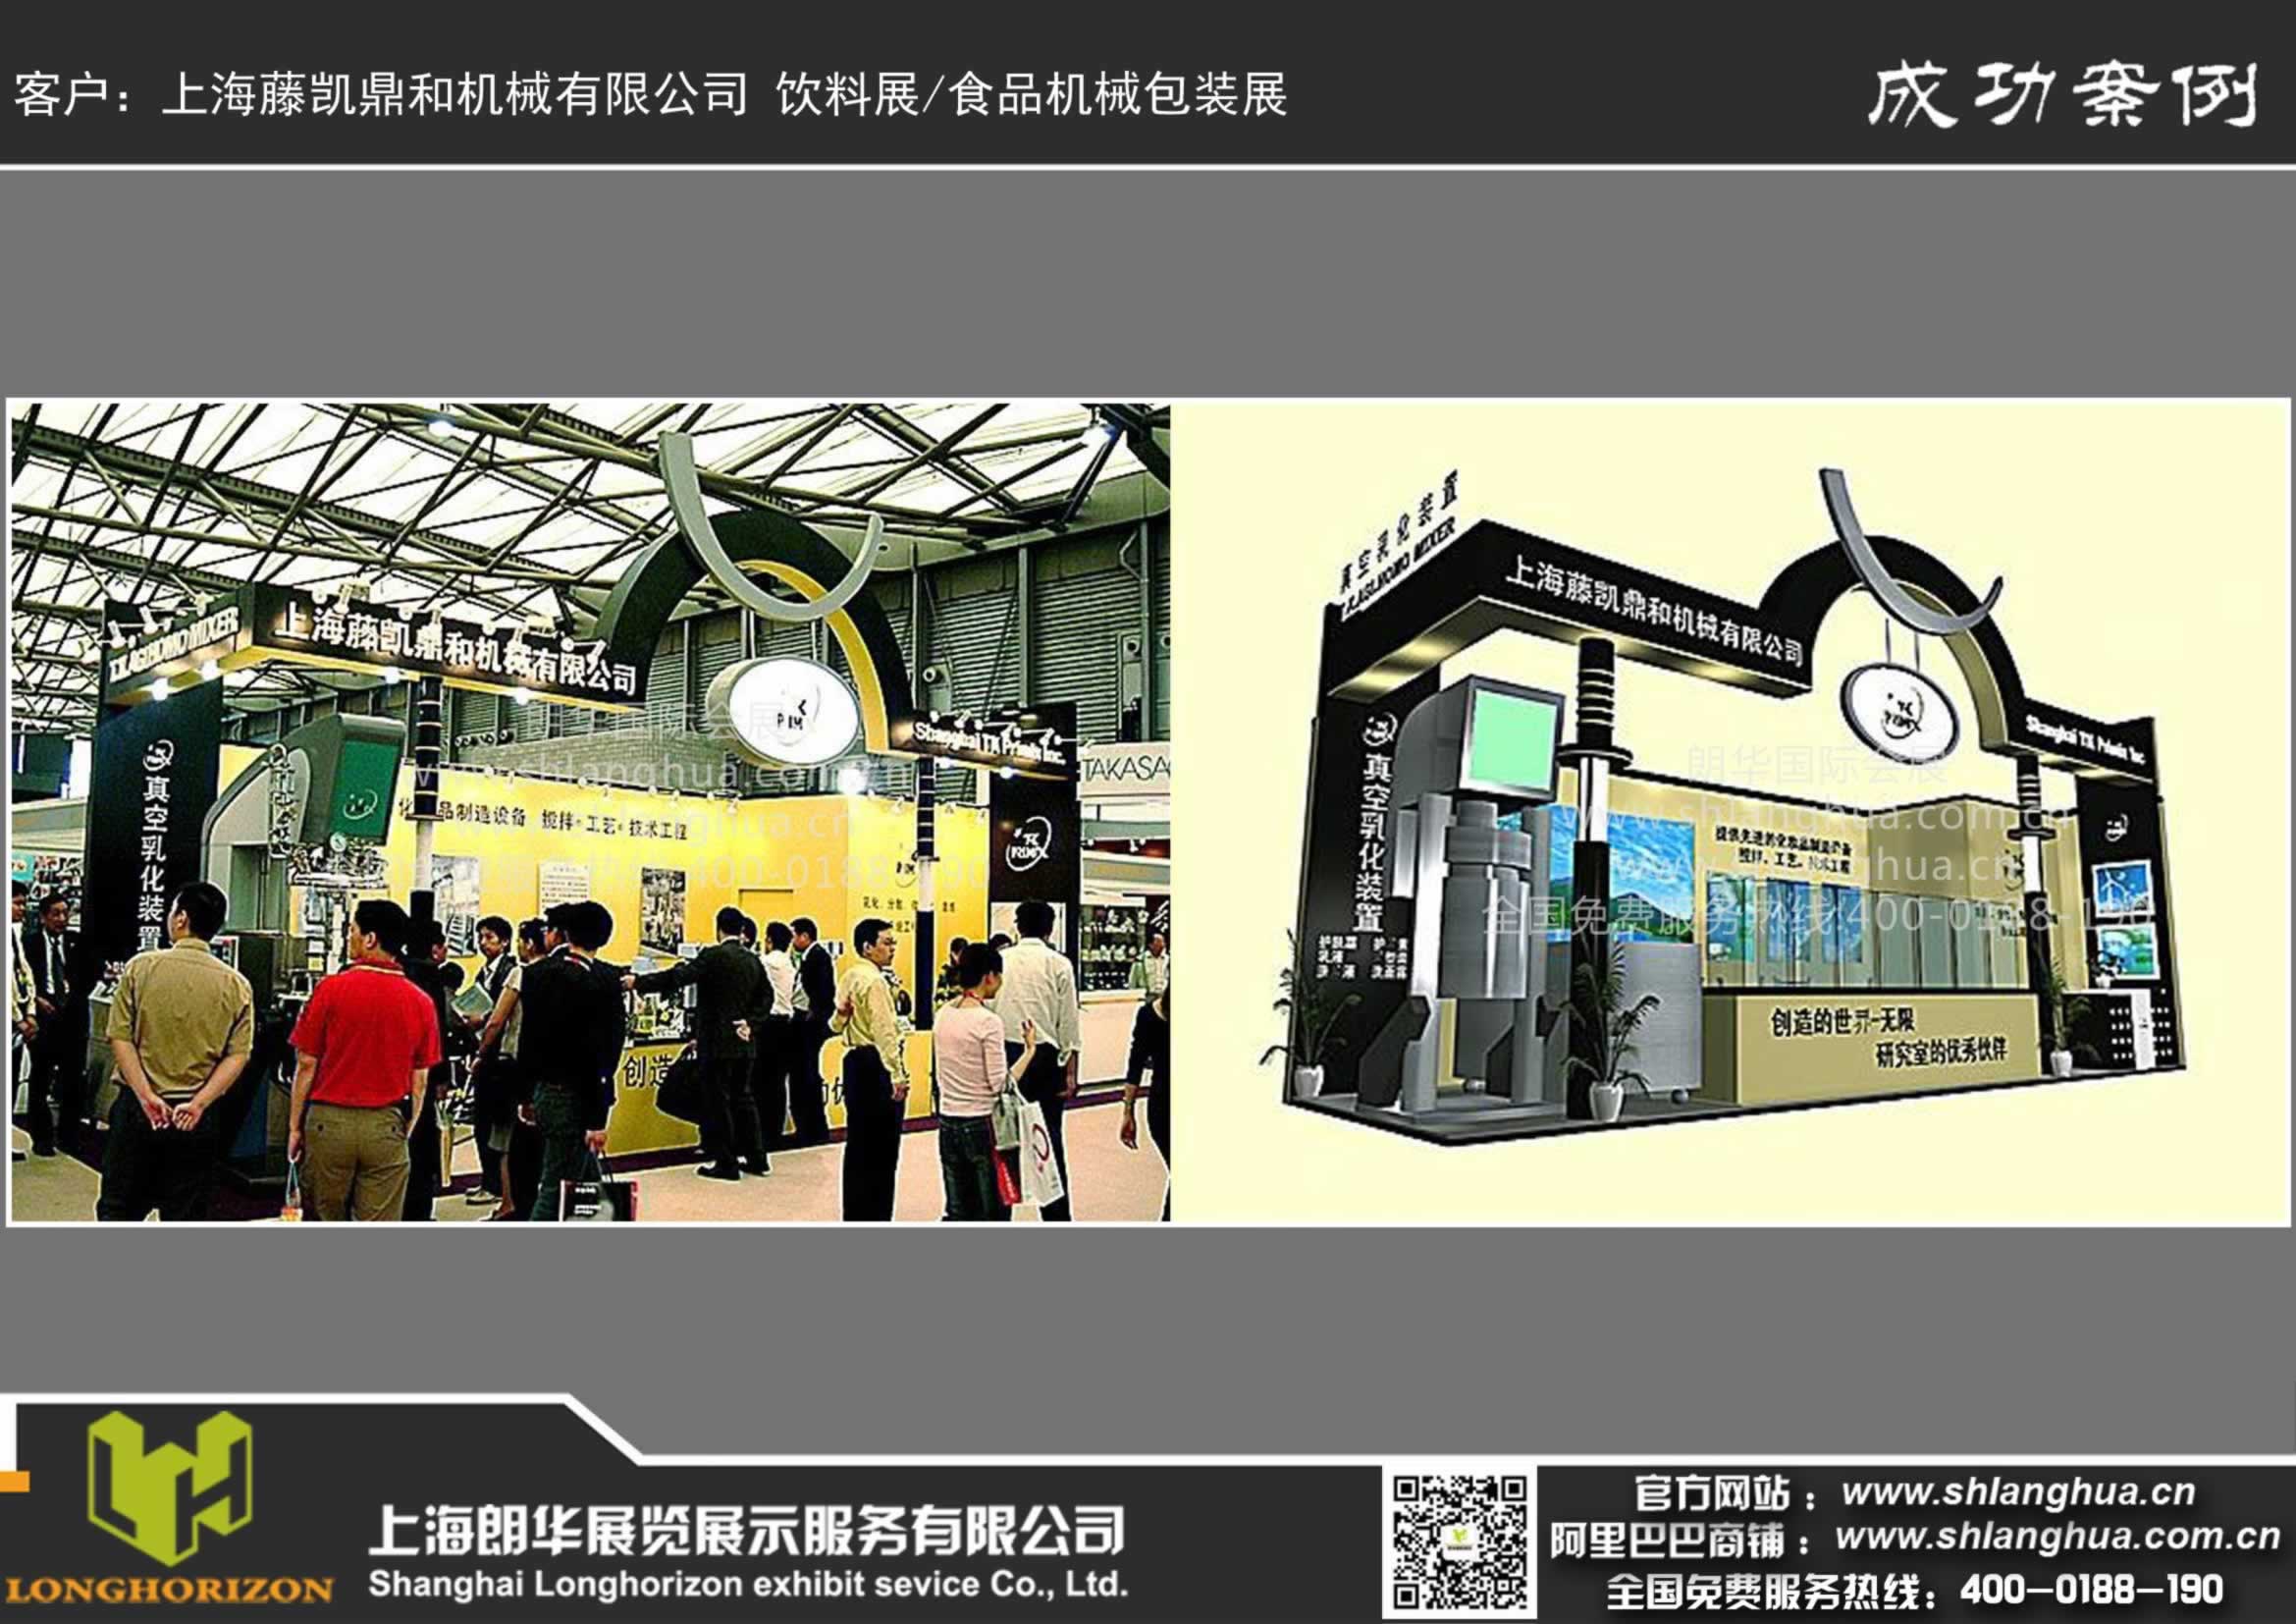 上海藤凯鼎和机械有限公司 饮料展 食品机械包装展